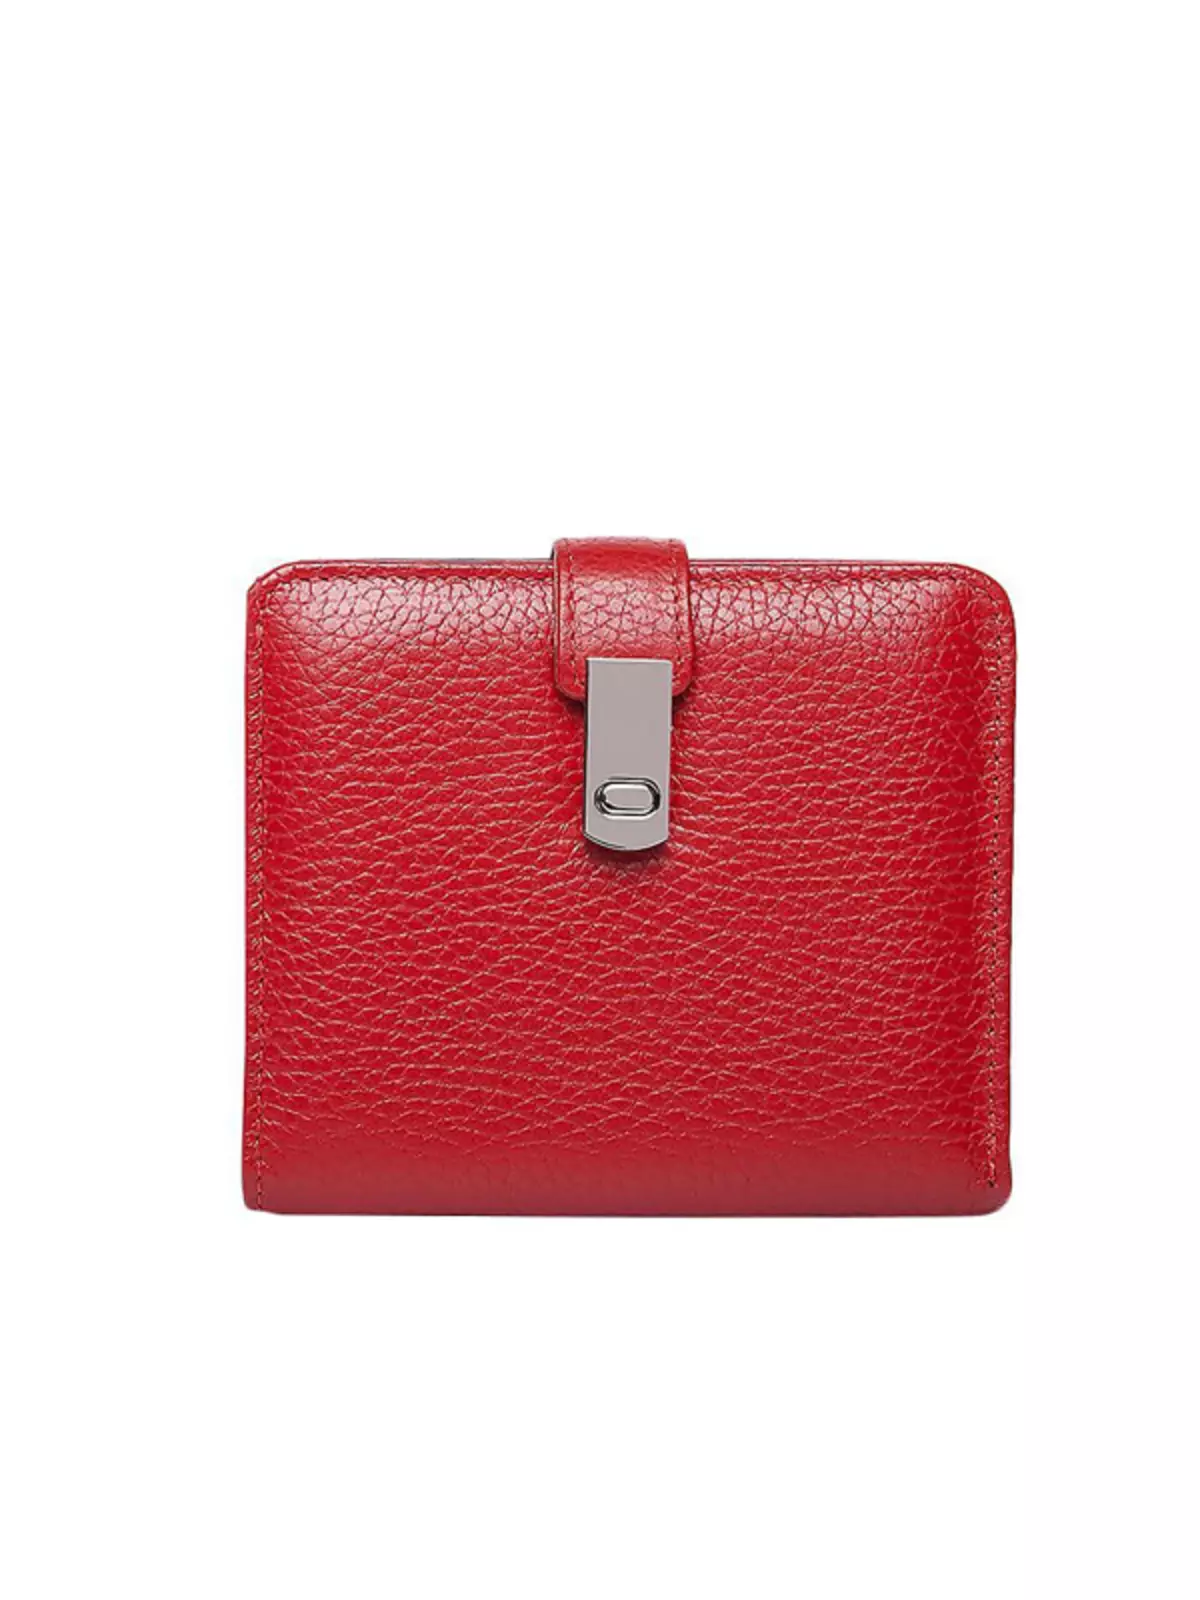 Червоні гаманці (65 фото): жіночі шкіряні портмоне червоного кольору 15161_32